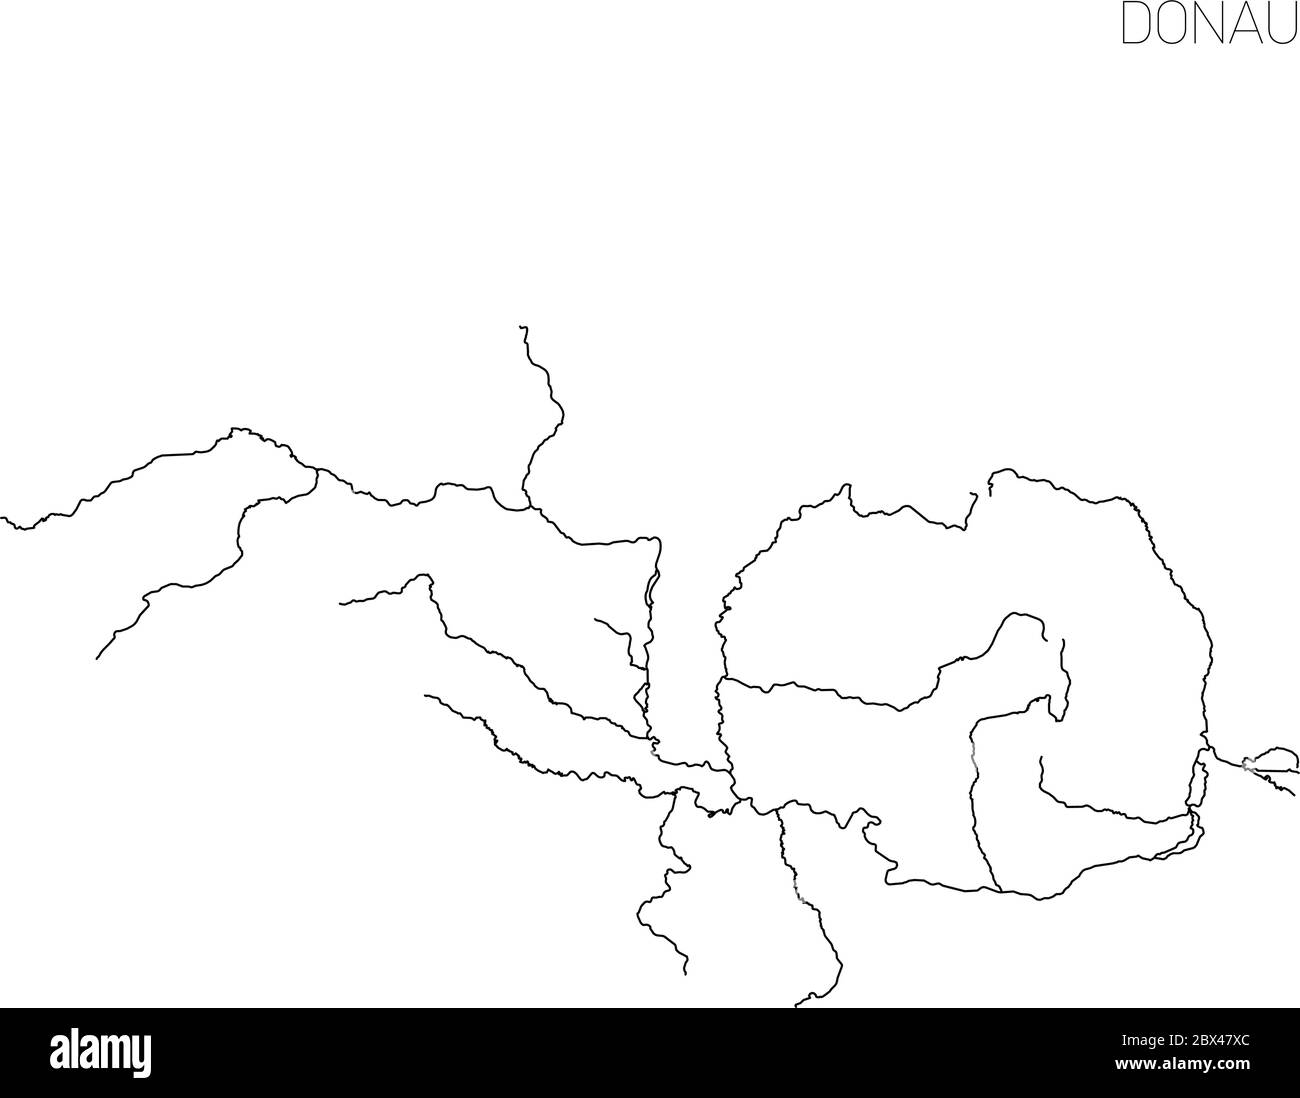 Mappa del bacino idrografico del fiume Donau. Semplice illustrazione vettoriale a contorno sottile. Illustrazione Vettoriale